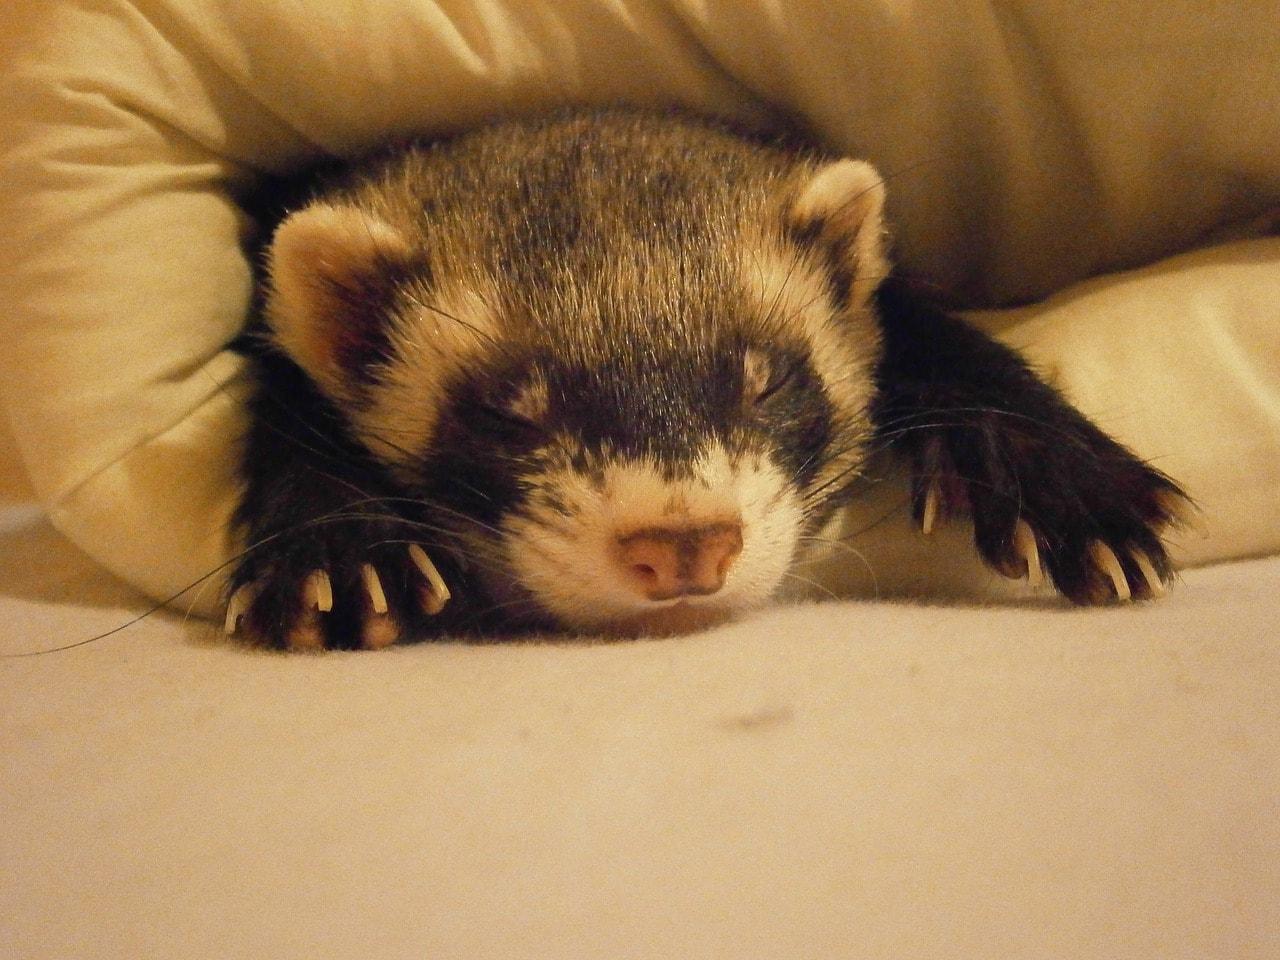 little ferret sleeping